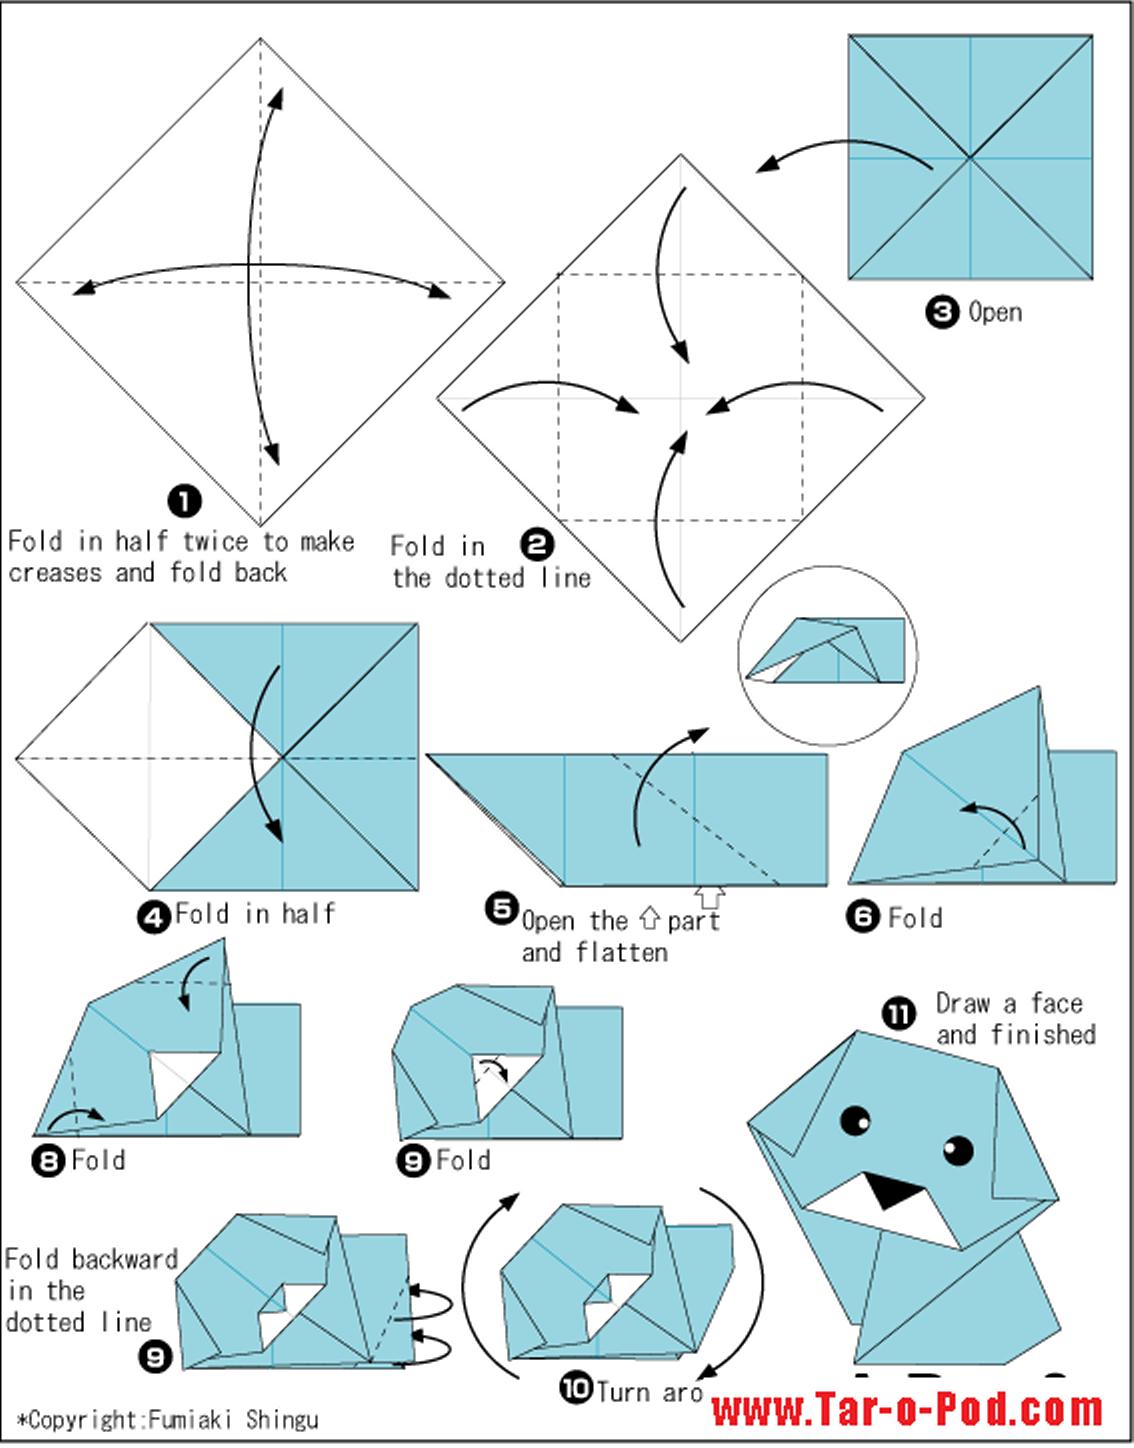 Как сделать маленький оригами. Поделка оригами из бумаги для начинающих пошагово. Собачка оригами из бумаги для детей схемы. Как сложить оригами из бумаги для начинающих. Оригами щенок схема из бумаги для детей.